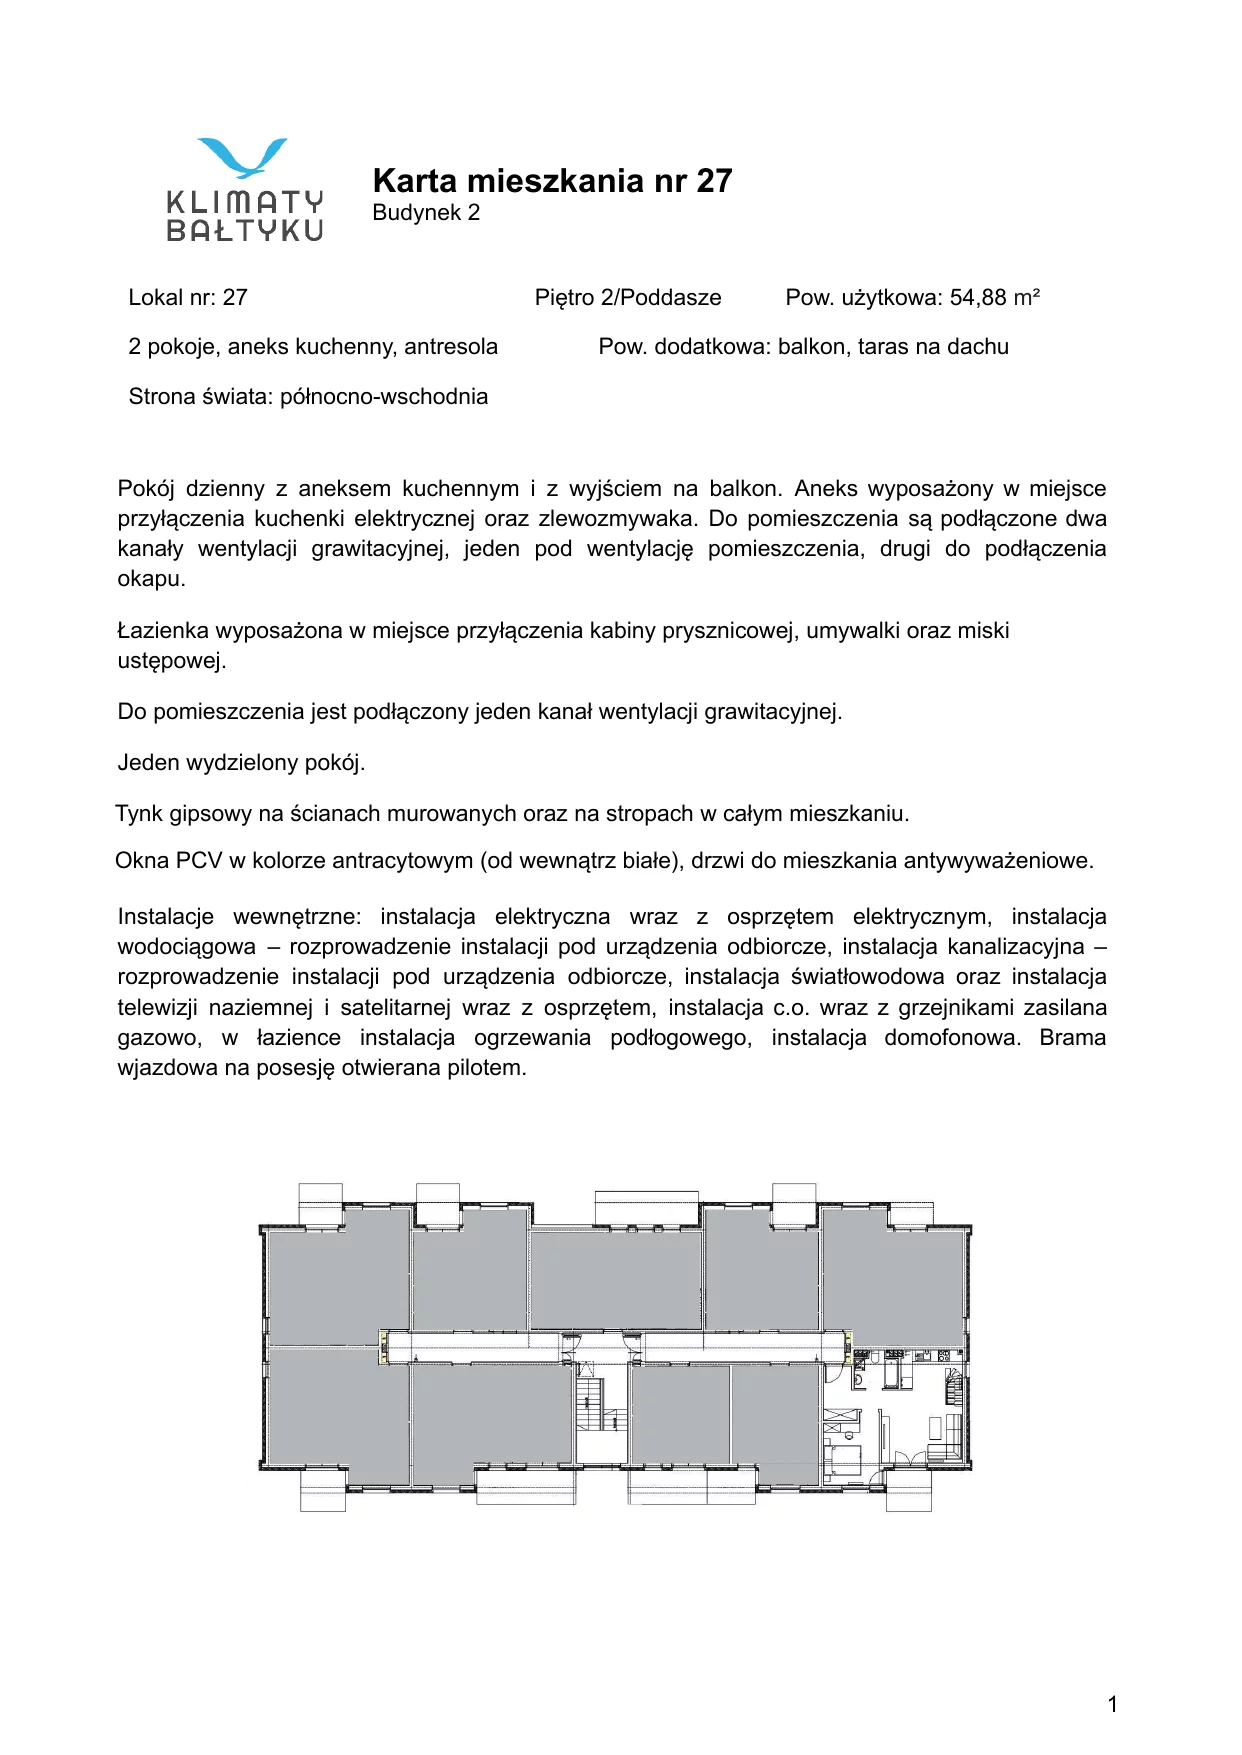 Apartament 54,88 m², piętro 2, oferta nr 27, Klimaty Bałtyku, Dziwnów, ul. Daglezji 93-94